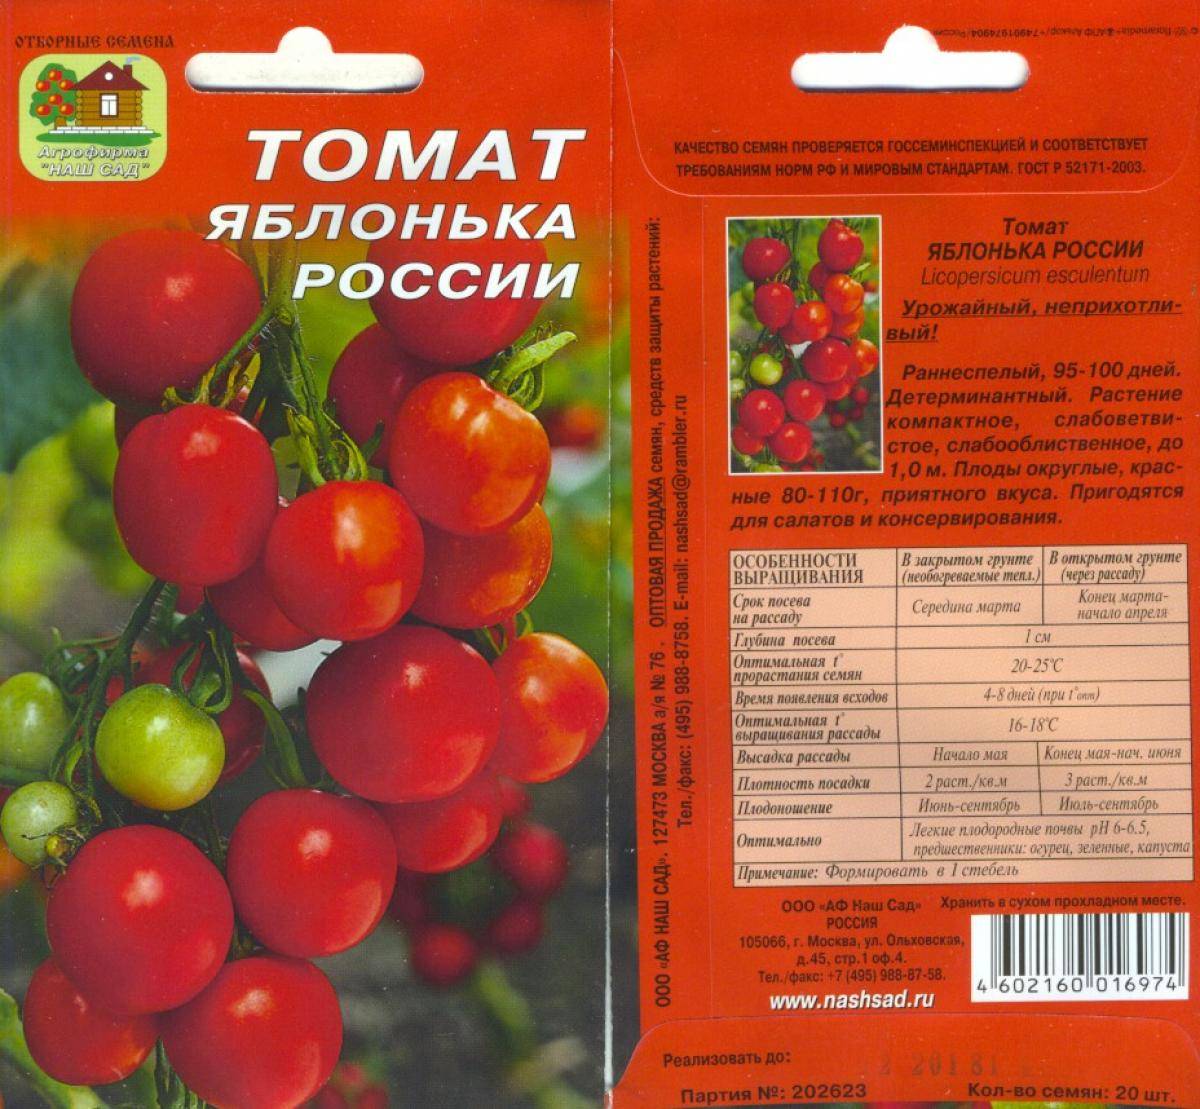 Помидоры «яблонька россии»: описание самого неприхотливого сорта с высокой урожайностью